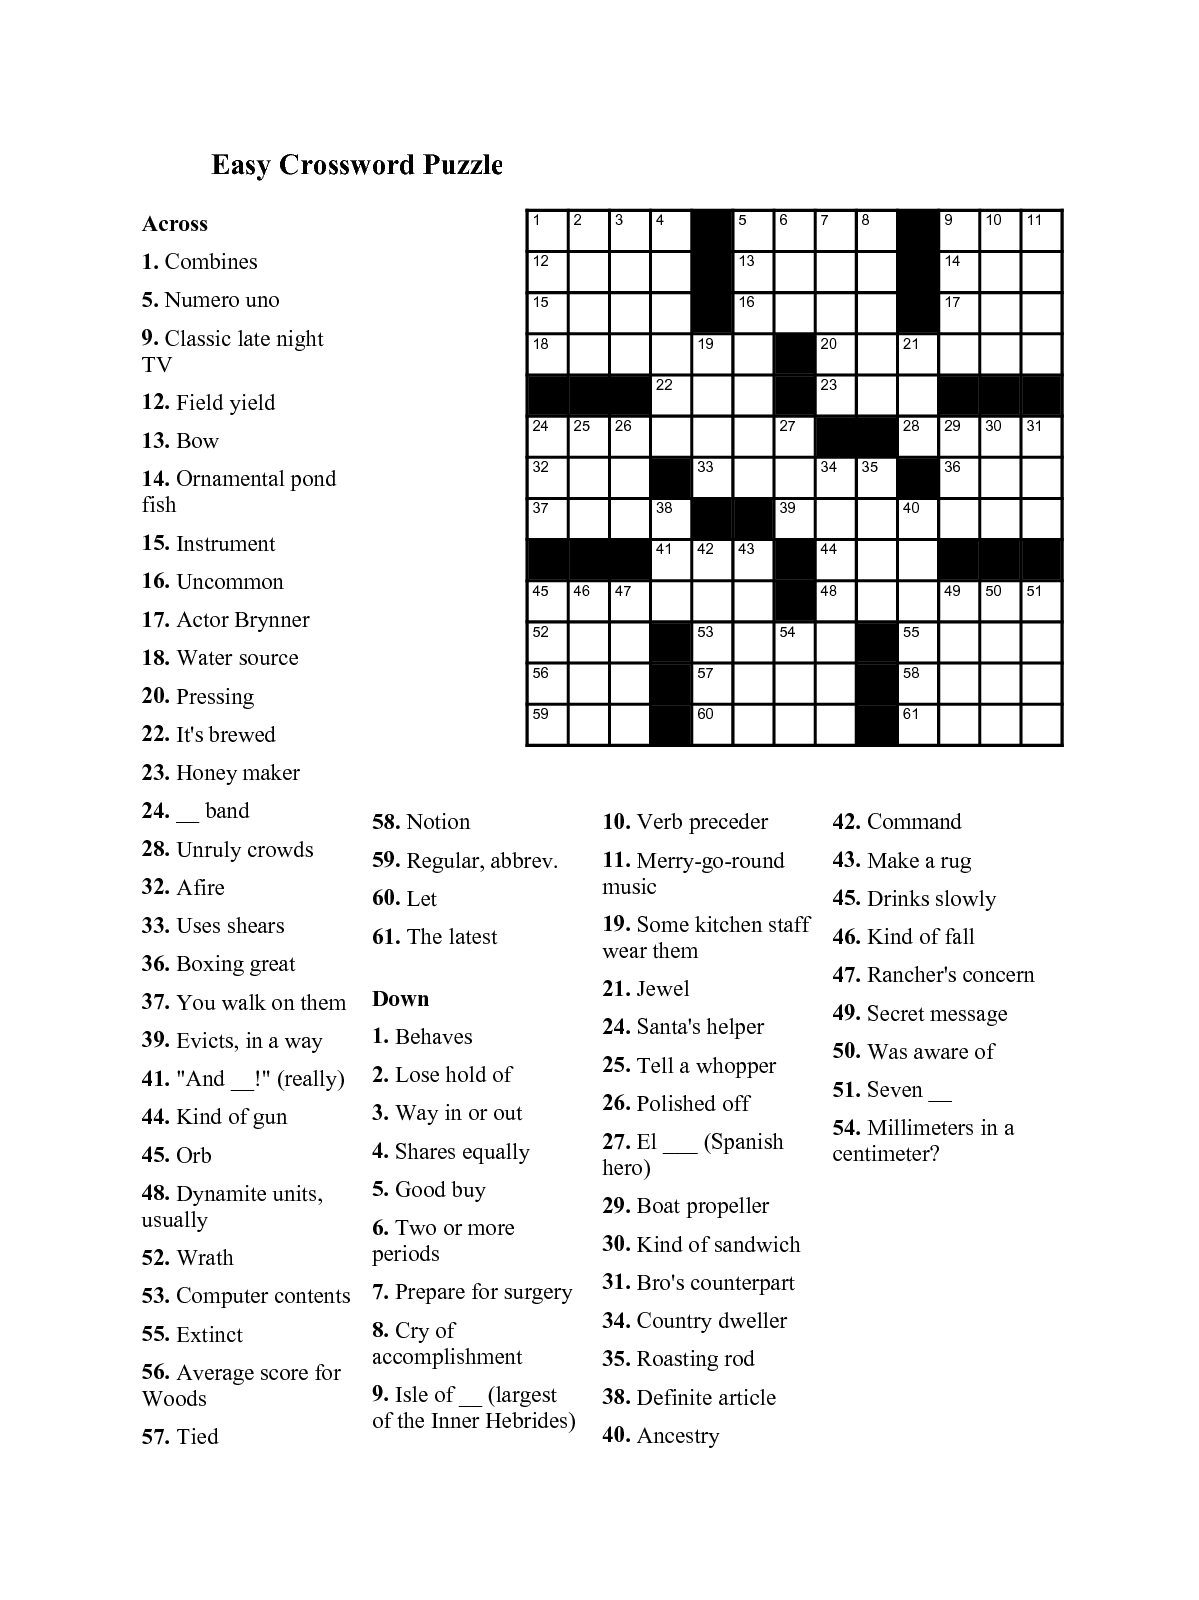 Easy Printable Crossword Puzzles For Seniors : Easy Crossword Puzzle